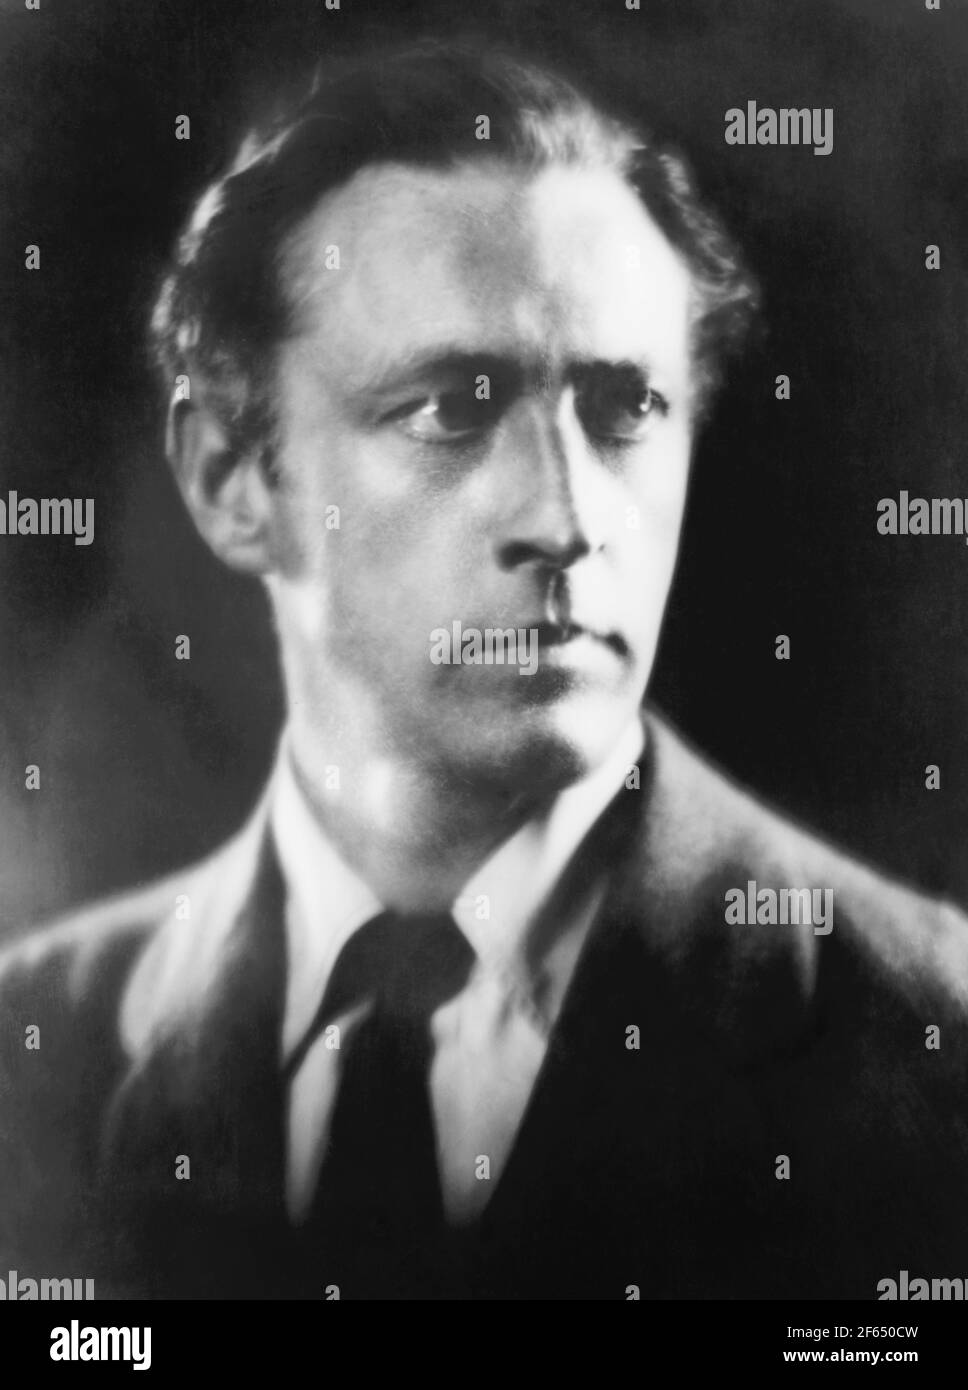 Ritratto d'epoca dell'attore americano John Barrymore (1882 – 1942). Foto di Arnold Genthe del 1922 circa. Foto Stock